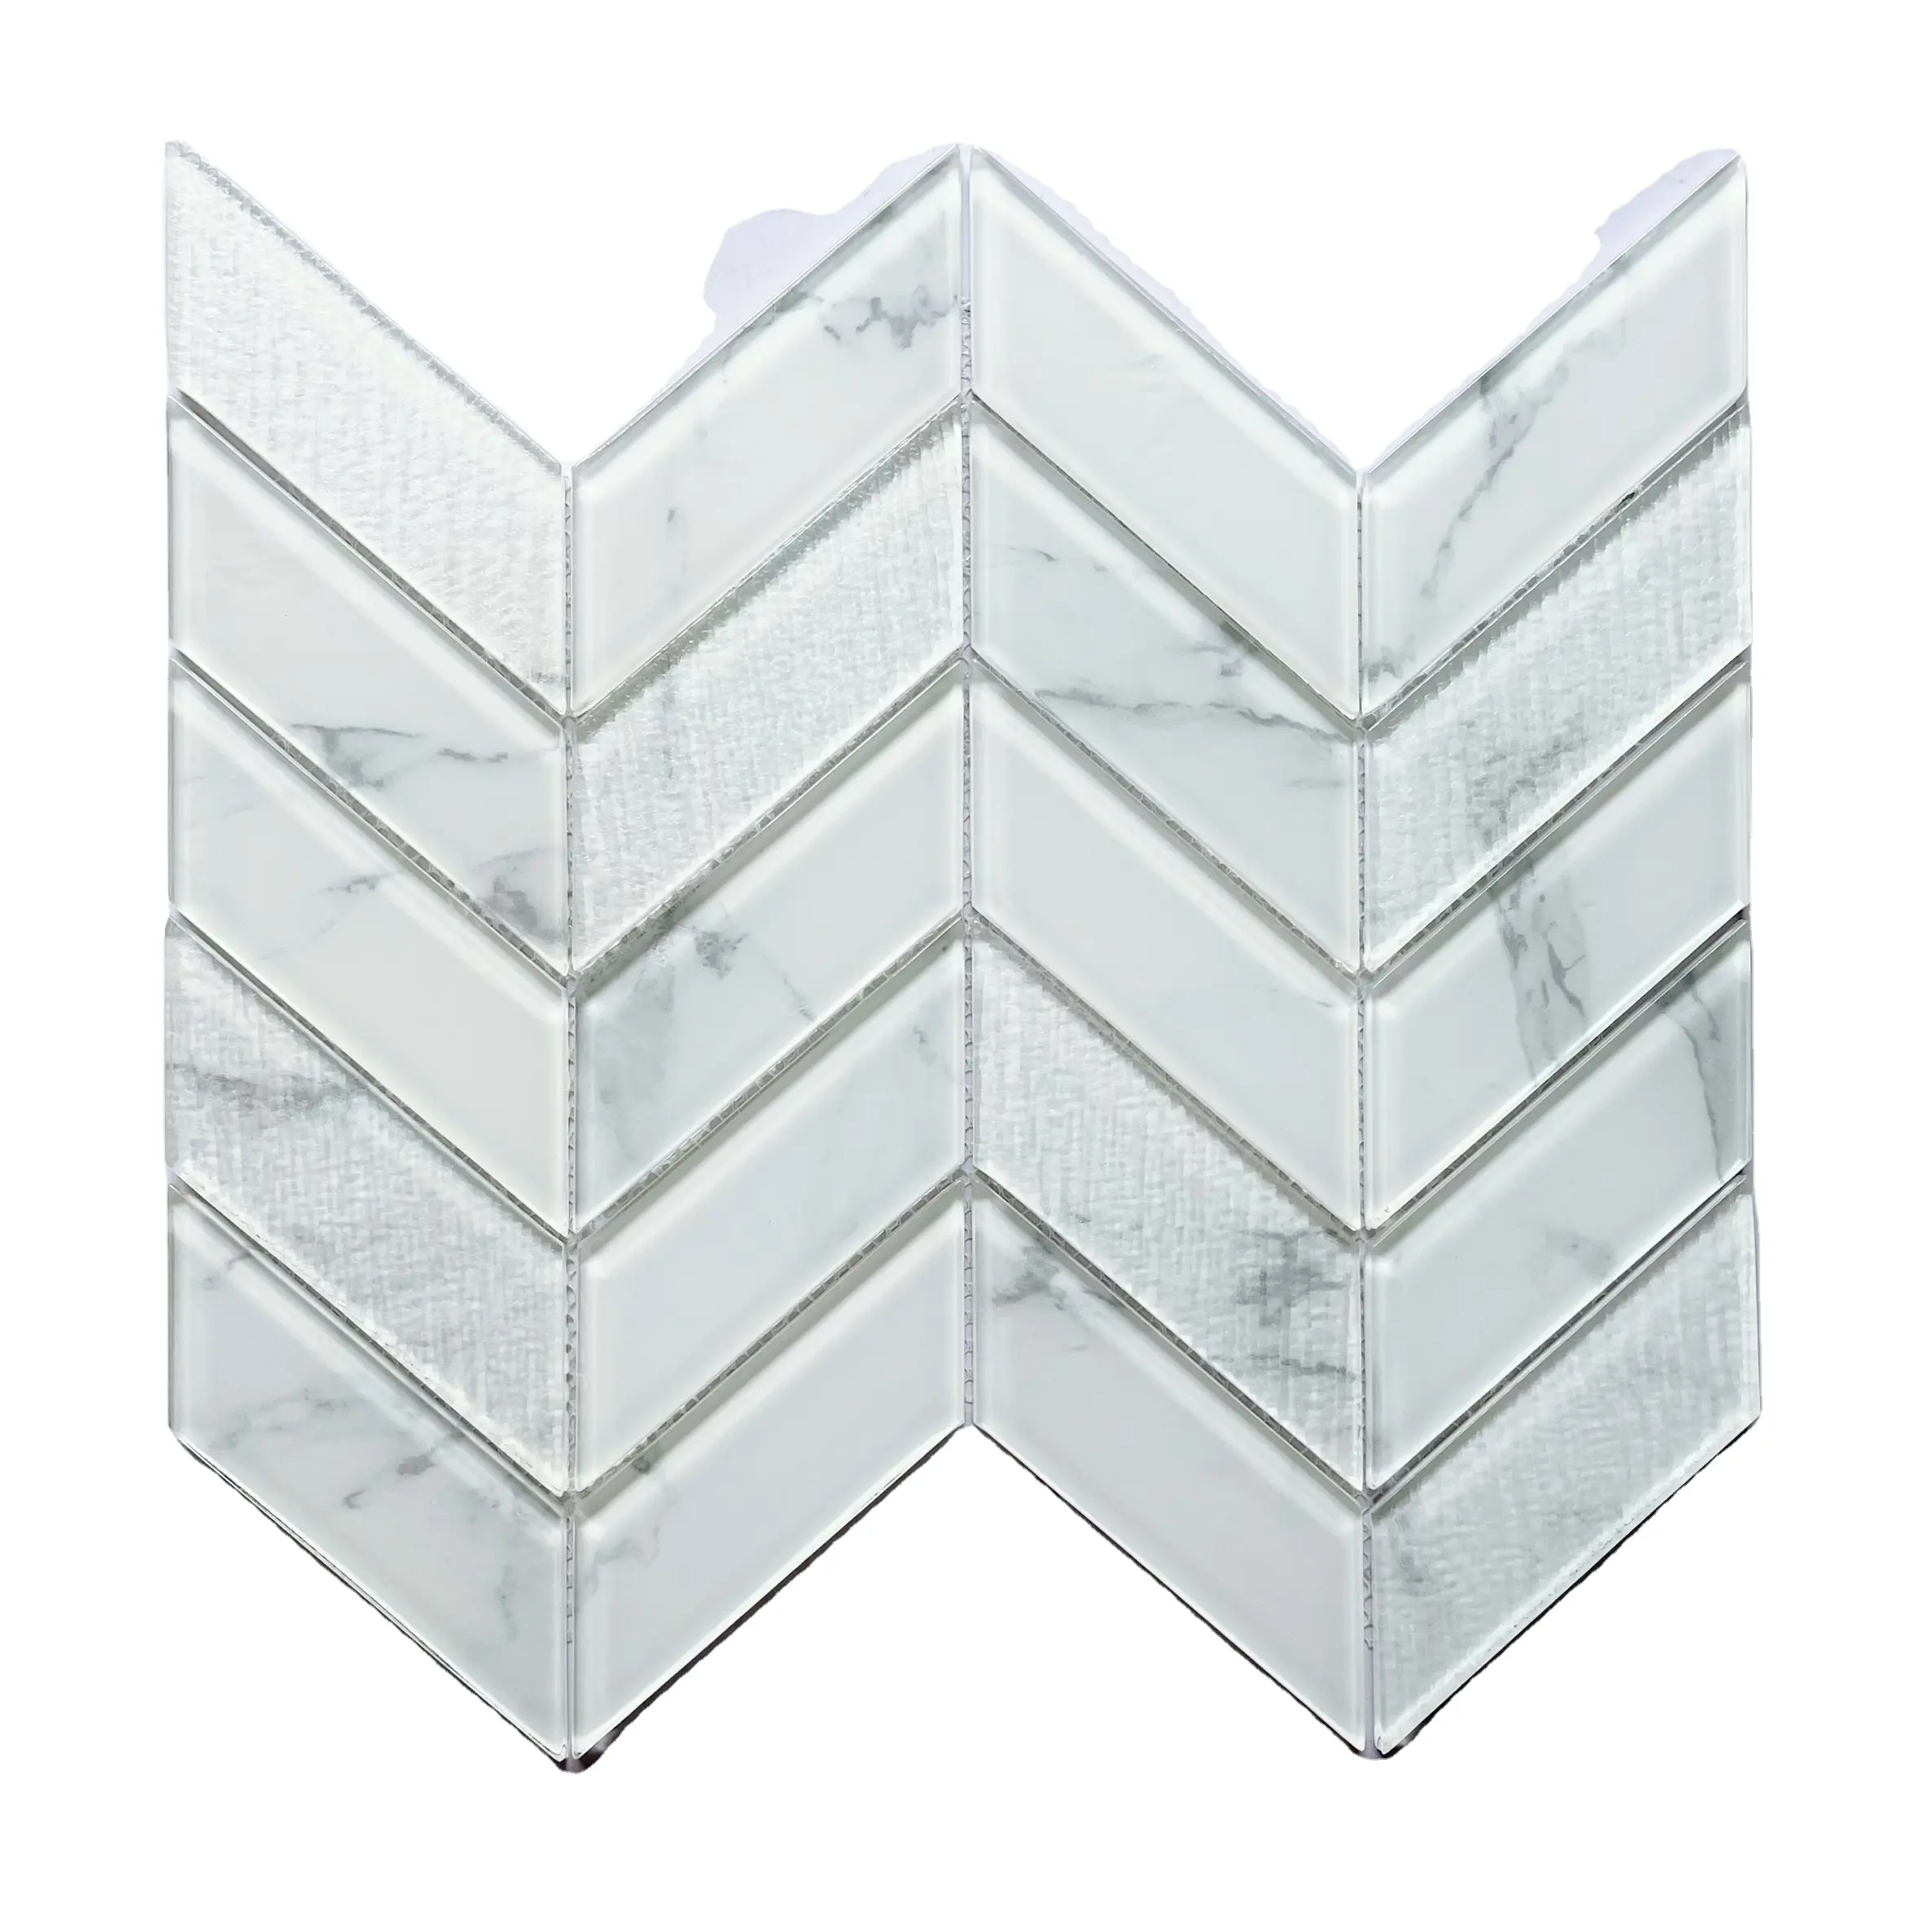 Preço de fábrica 338x275 Série Chevron de mosaico de vidro branco preto com desenho brilhante de azulejos de mosaico para decoração de paredes